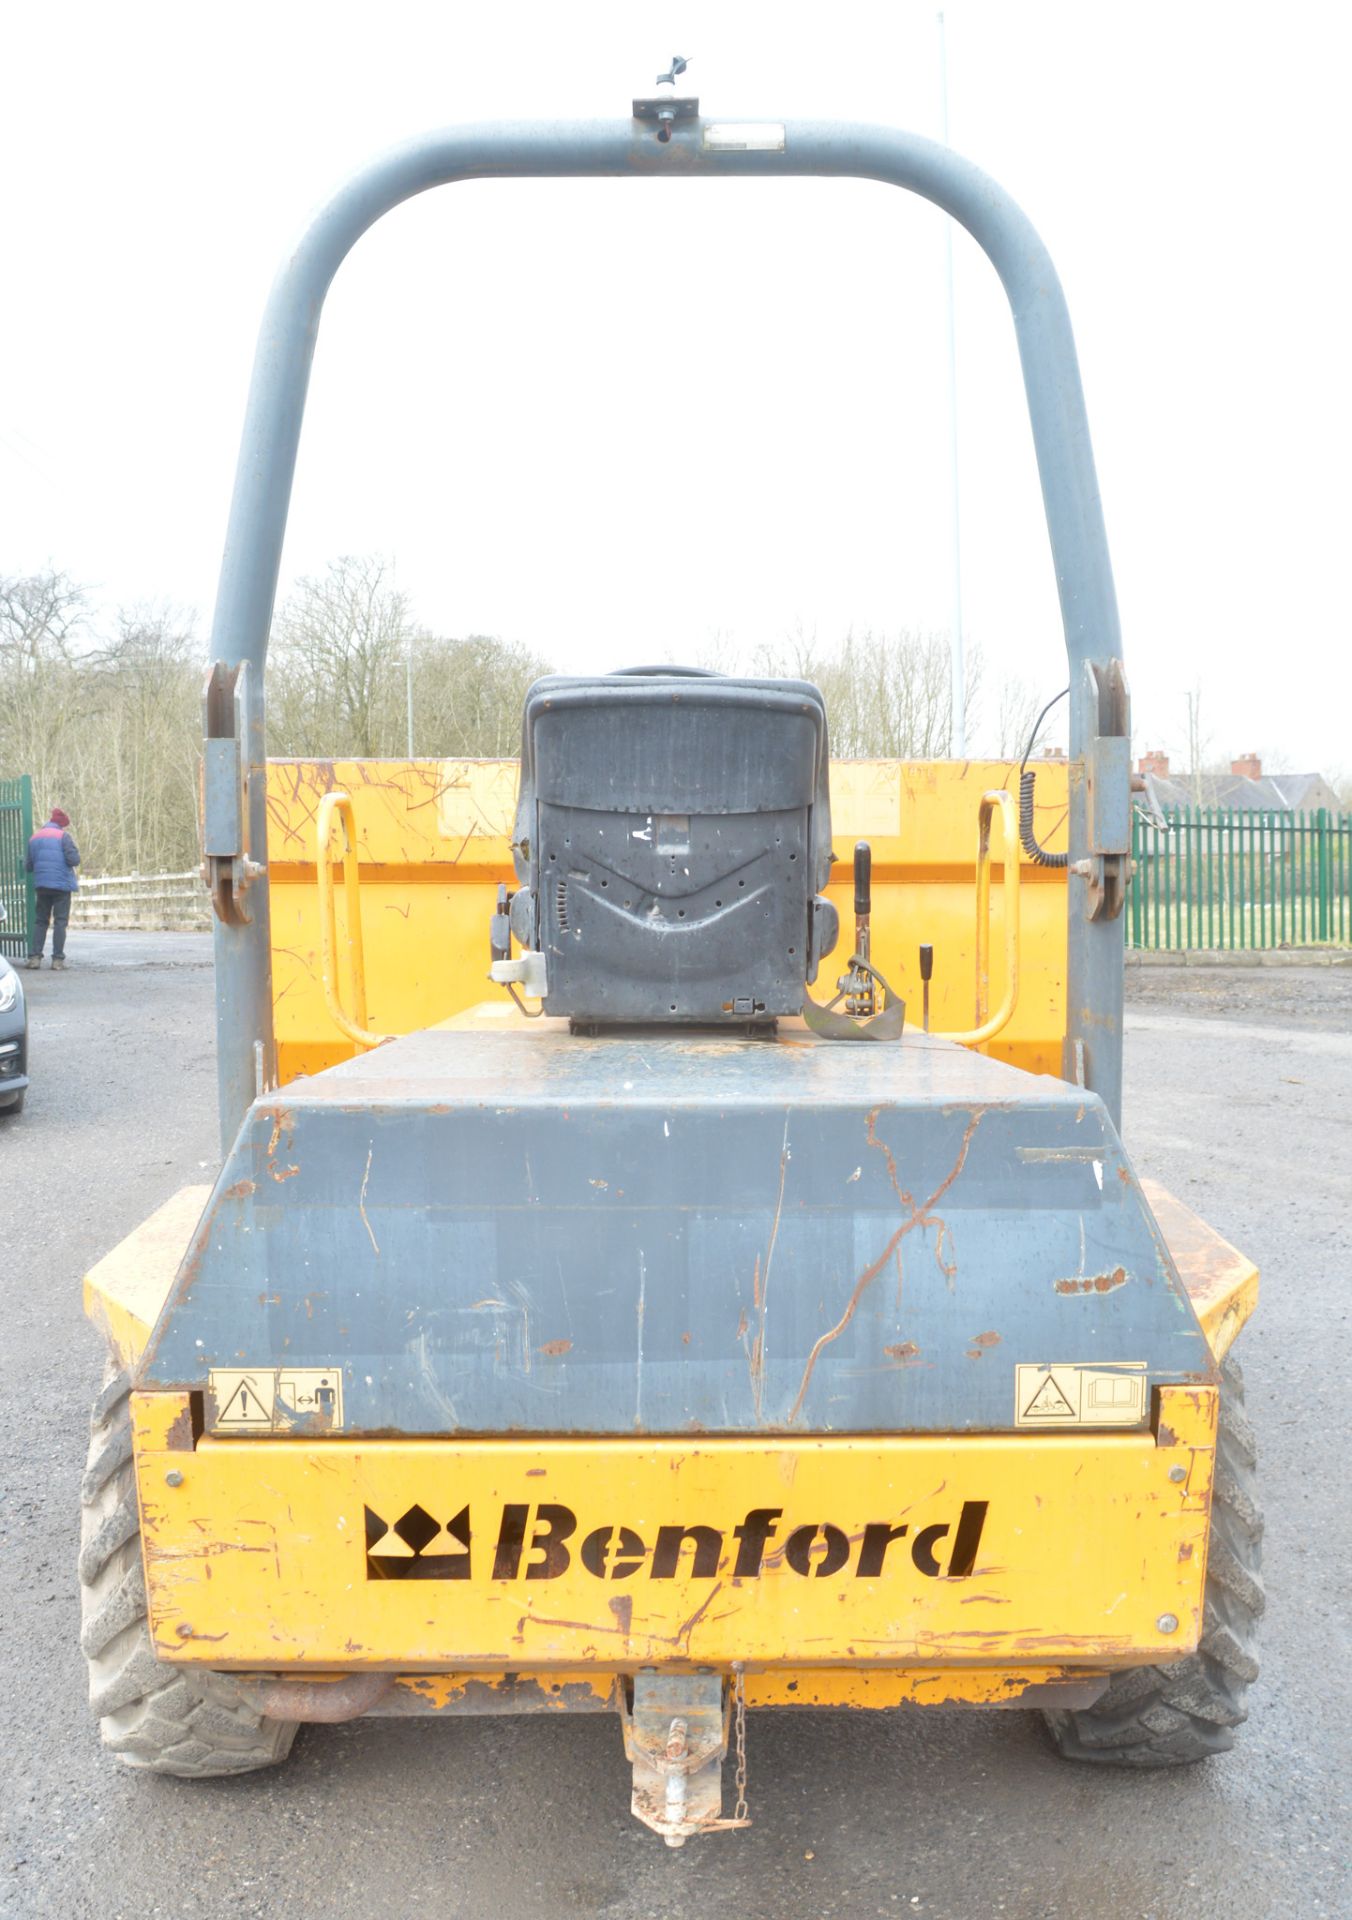 Benford Terex PT3000 3 tonne straight skip dumper  Year: 2004 S/N: E410AR343 Recorded hours: 2191 - Image 5 of 11